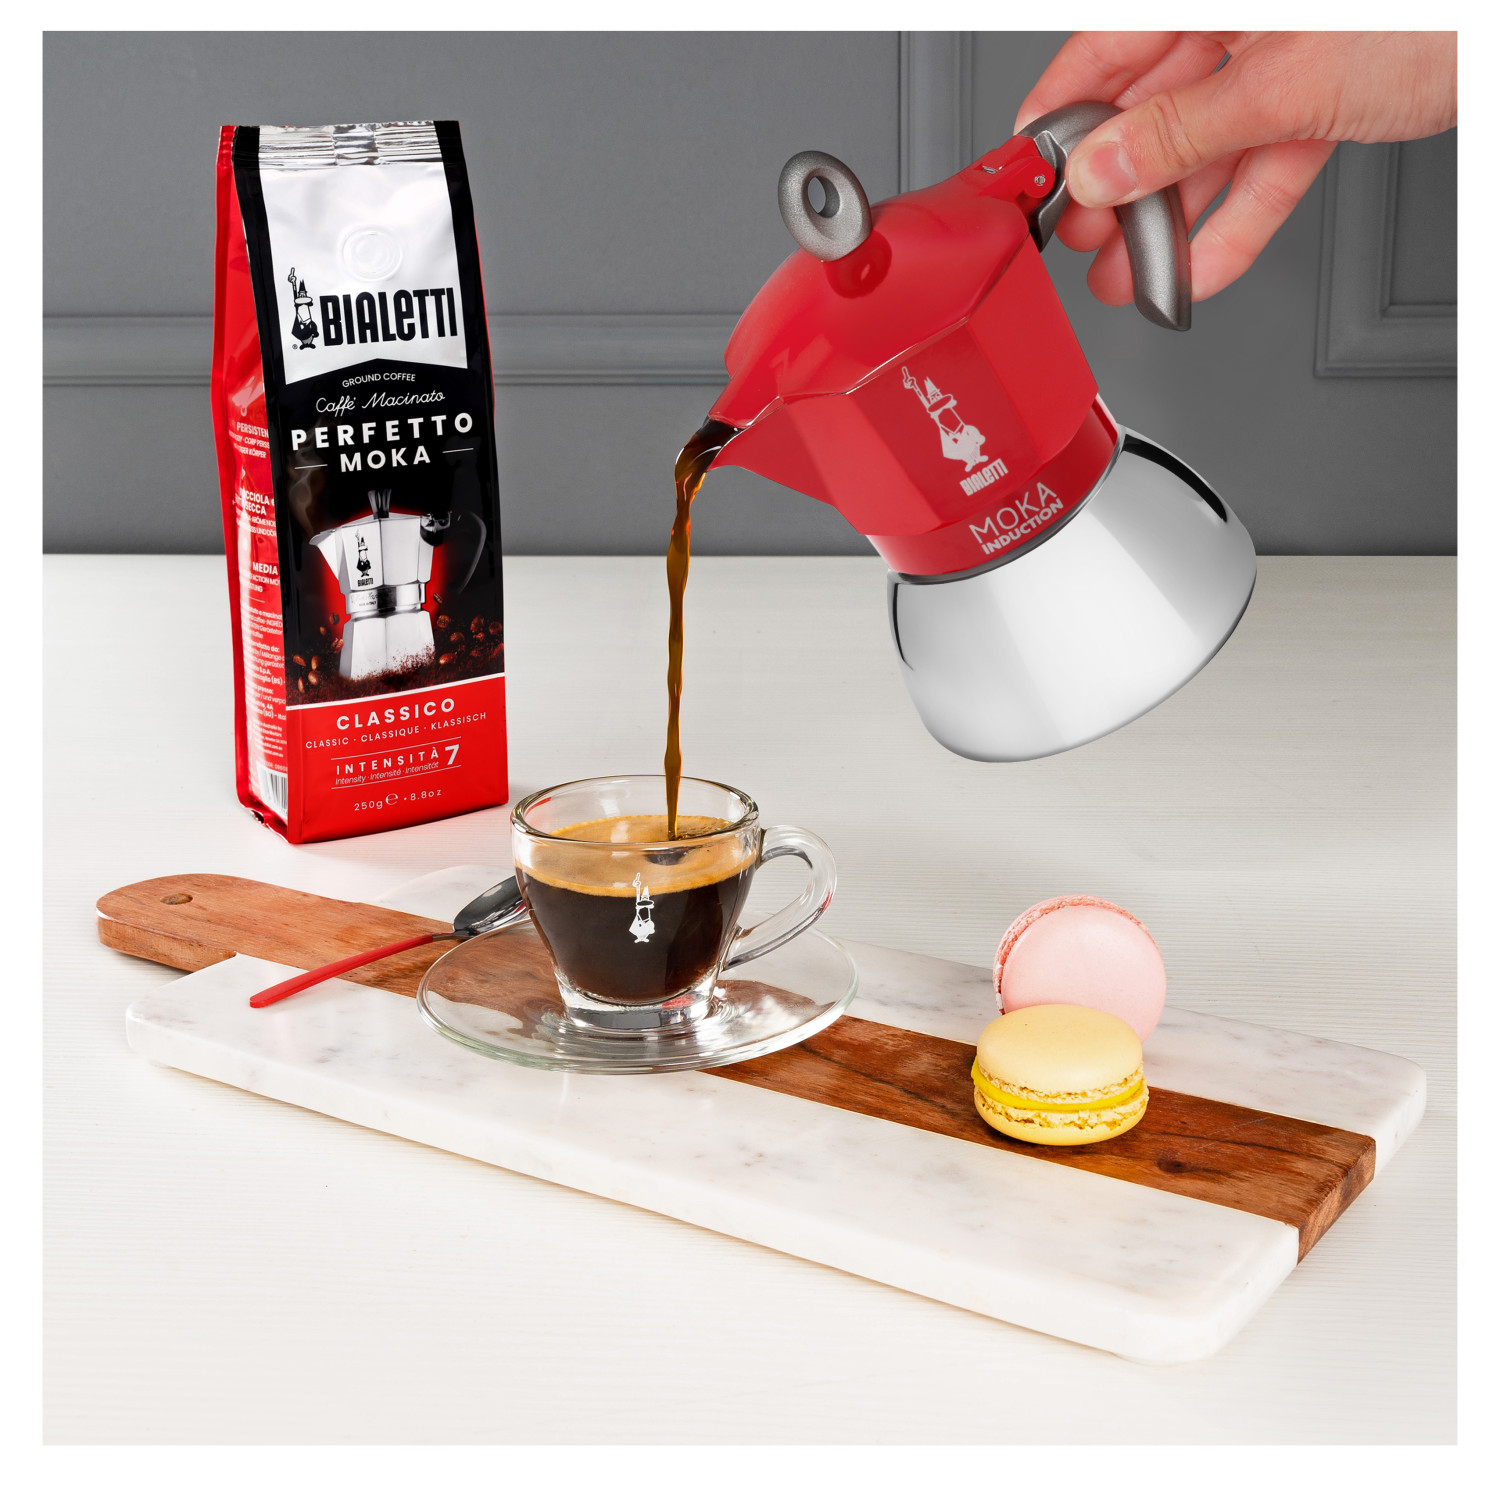 RED Rot/Silber Tassen Moka Induction Espressokocher für BIALETTI 4 New